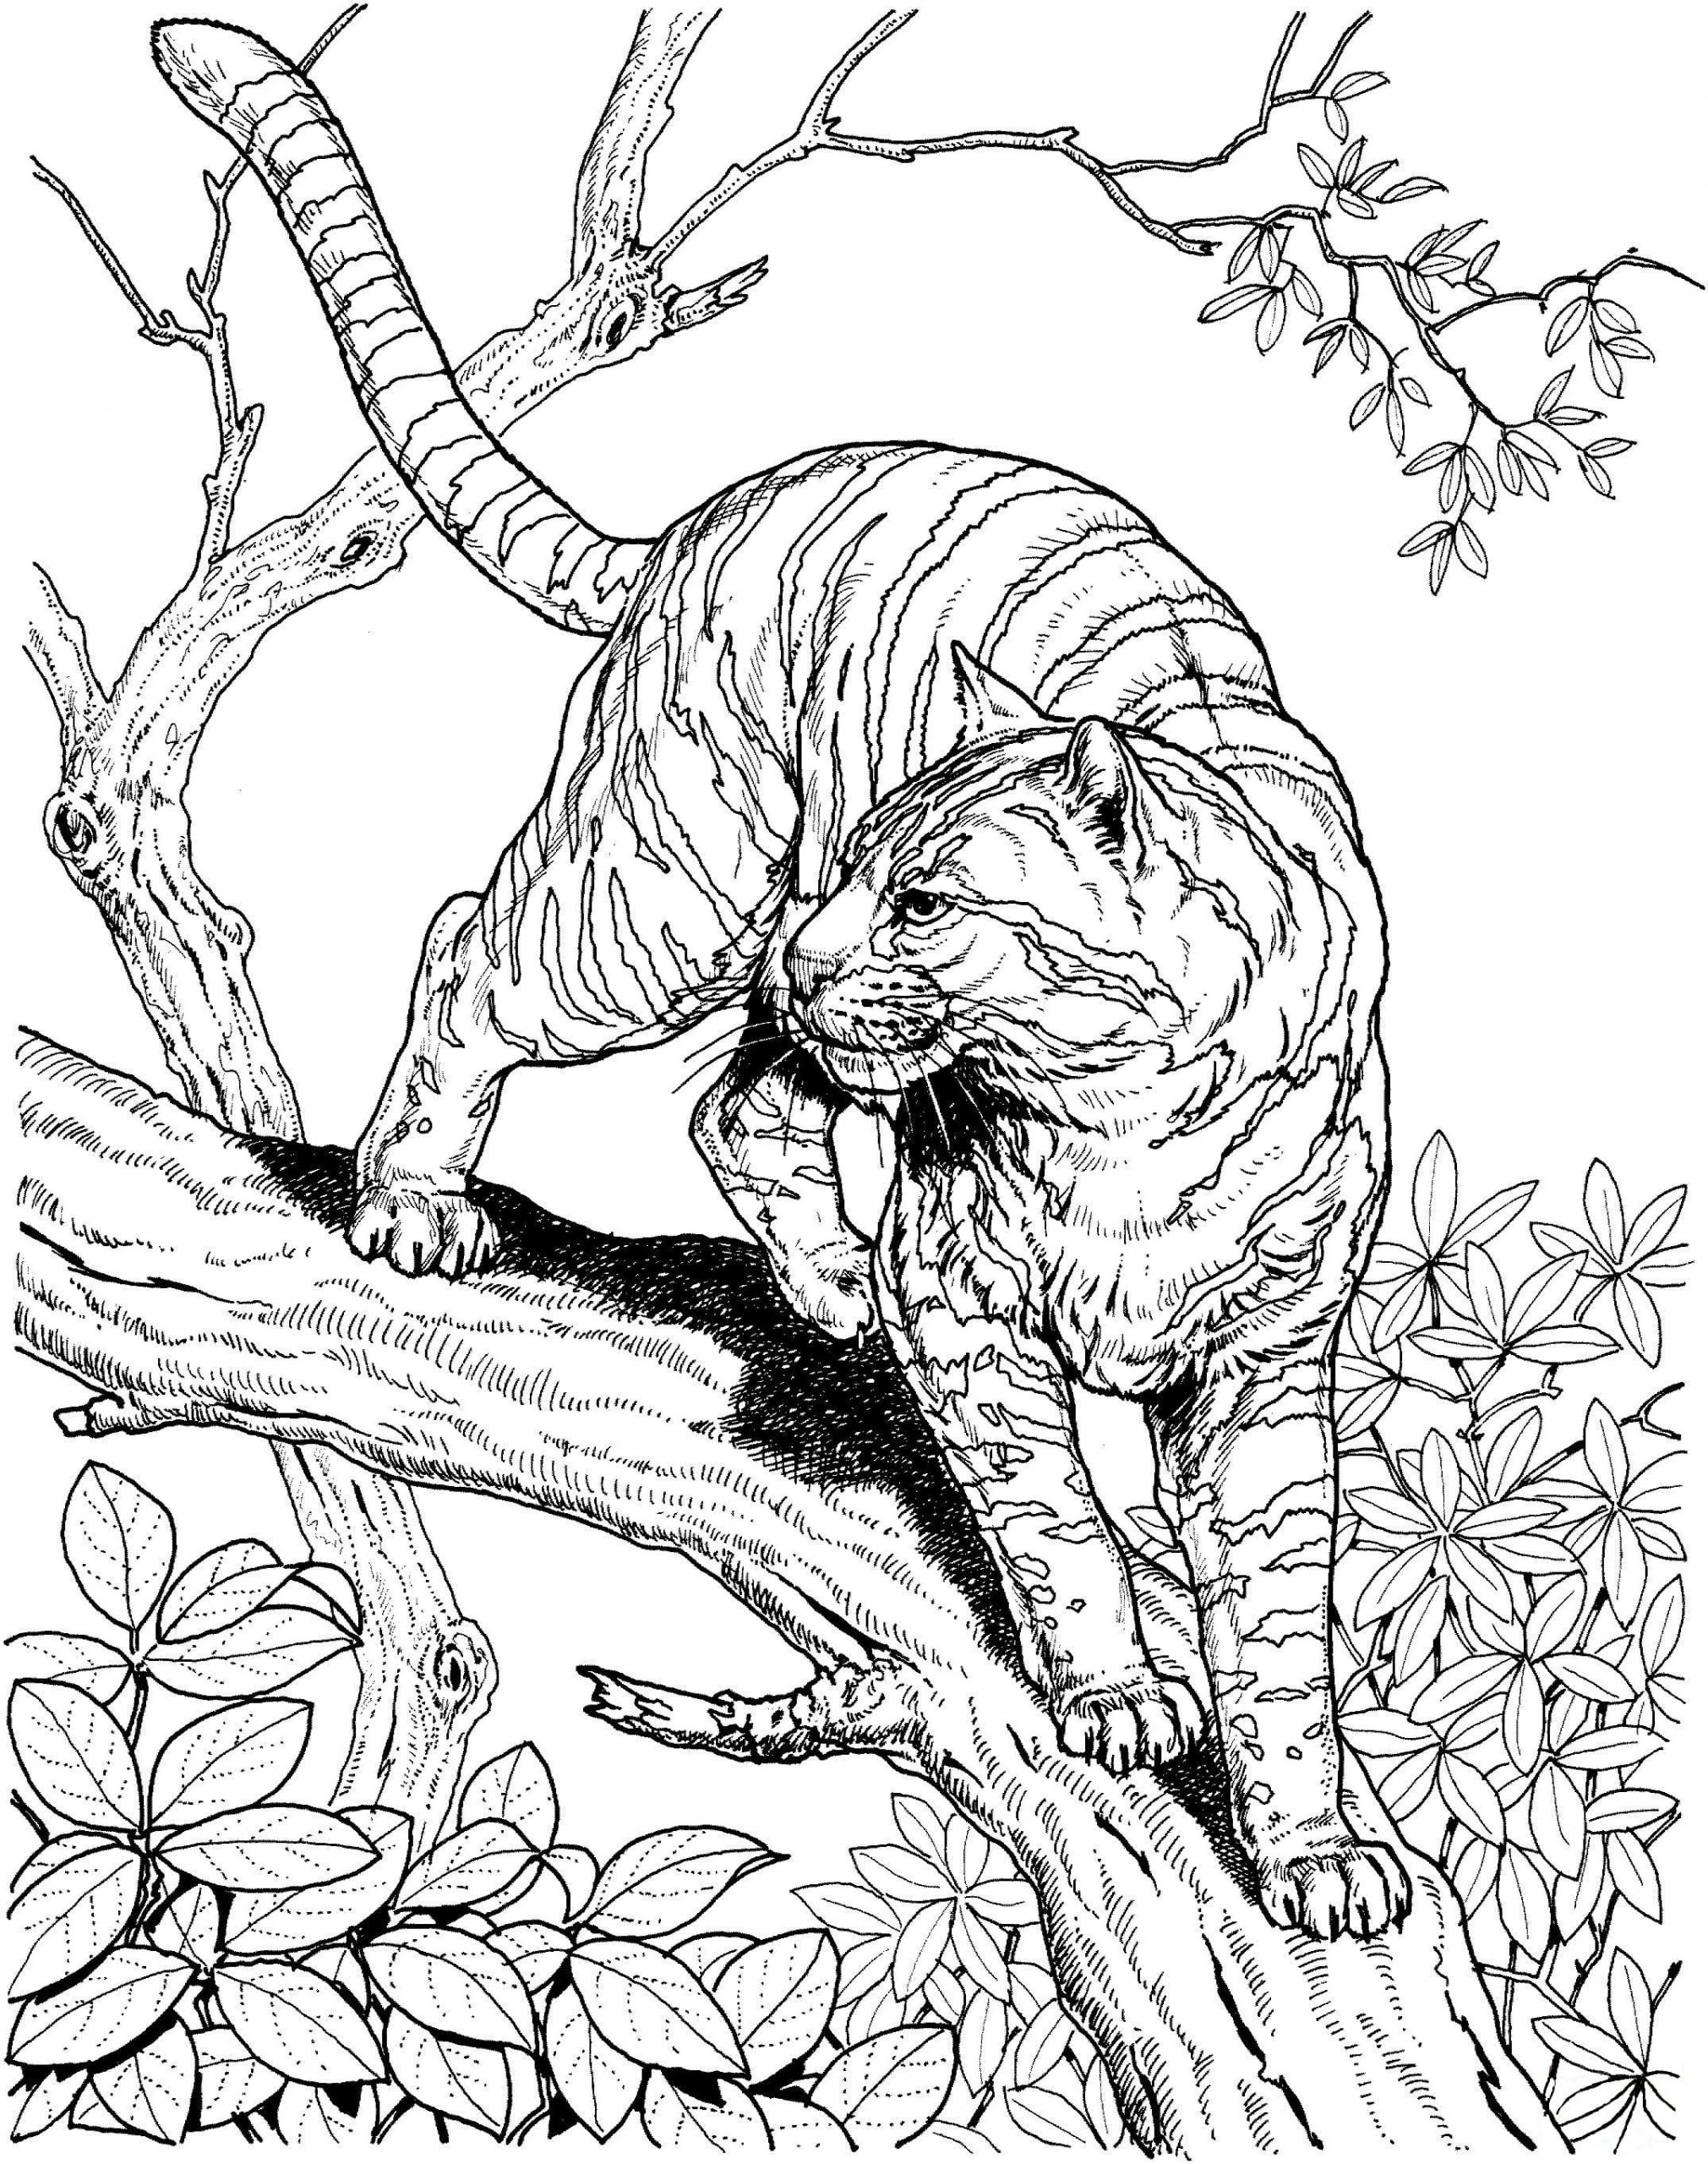 Omalovánka Jako všechny kočky je gepard obratný ve šplhání po stromech.